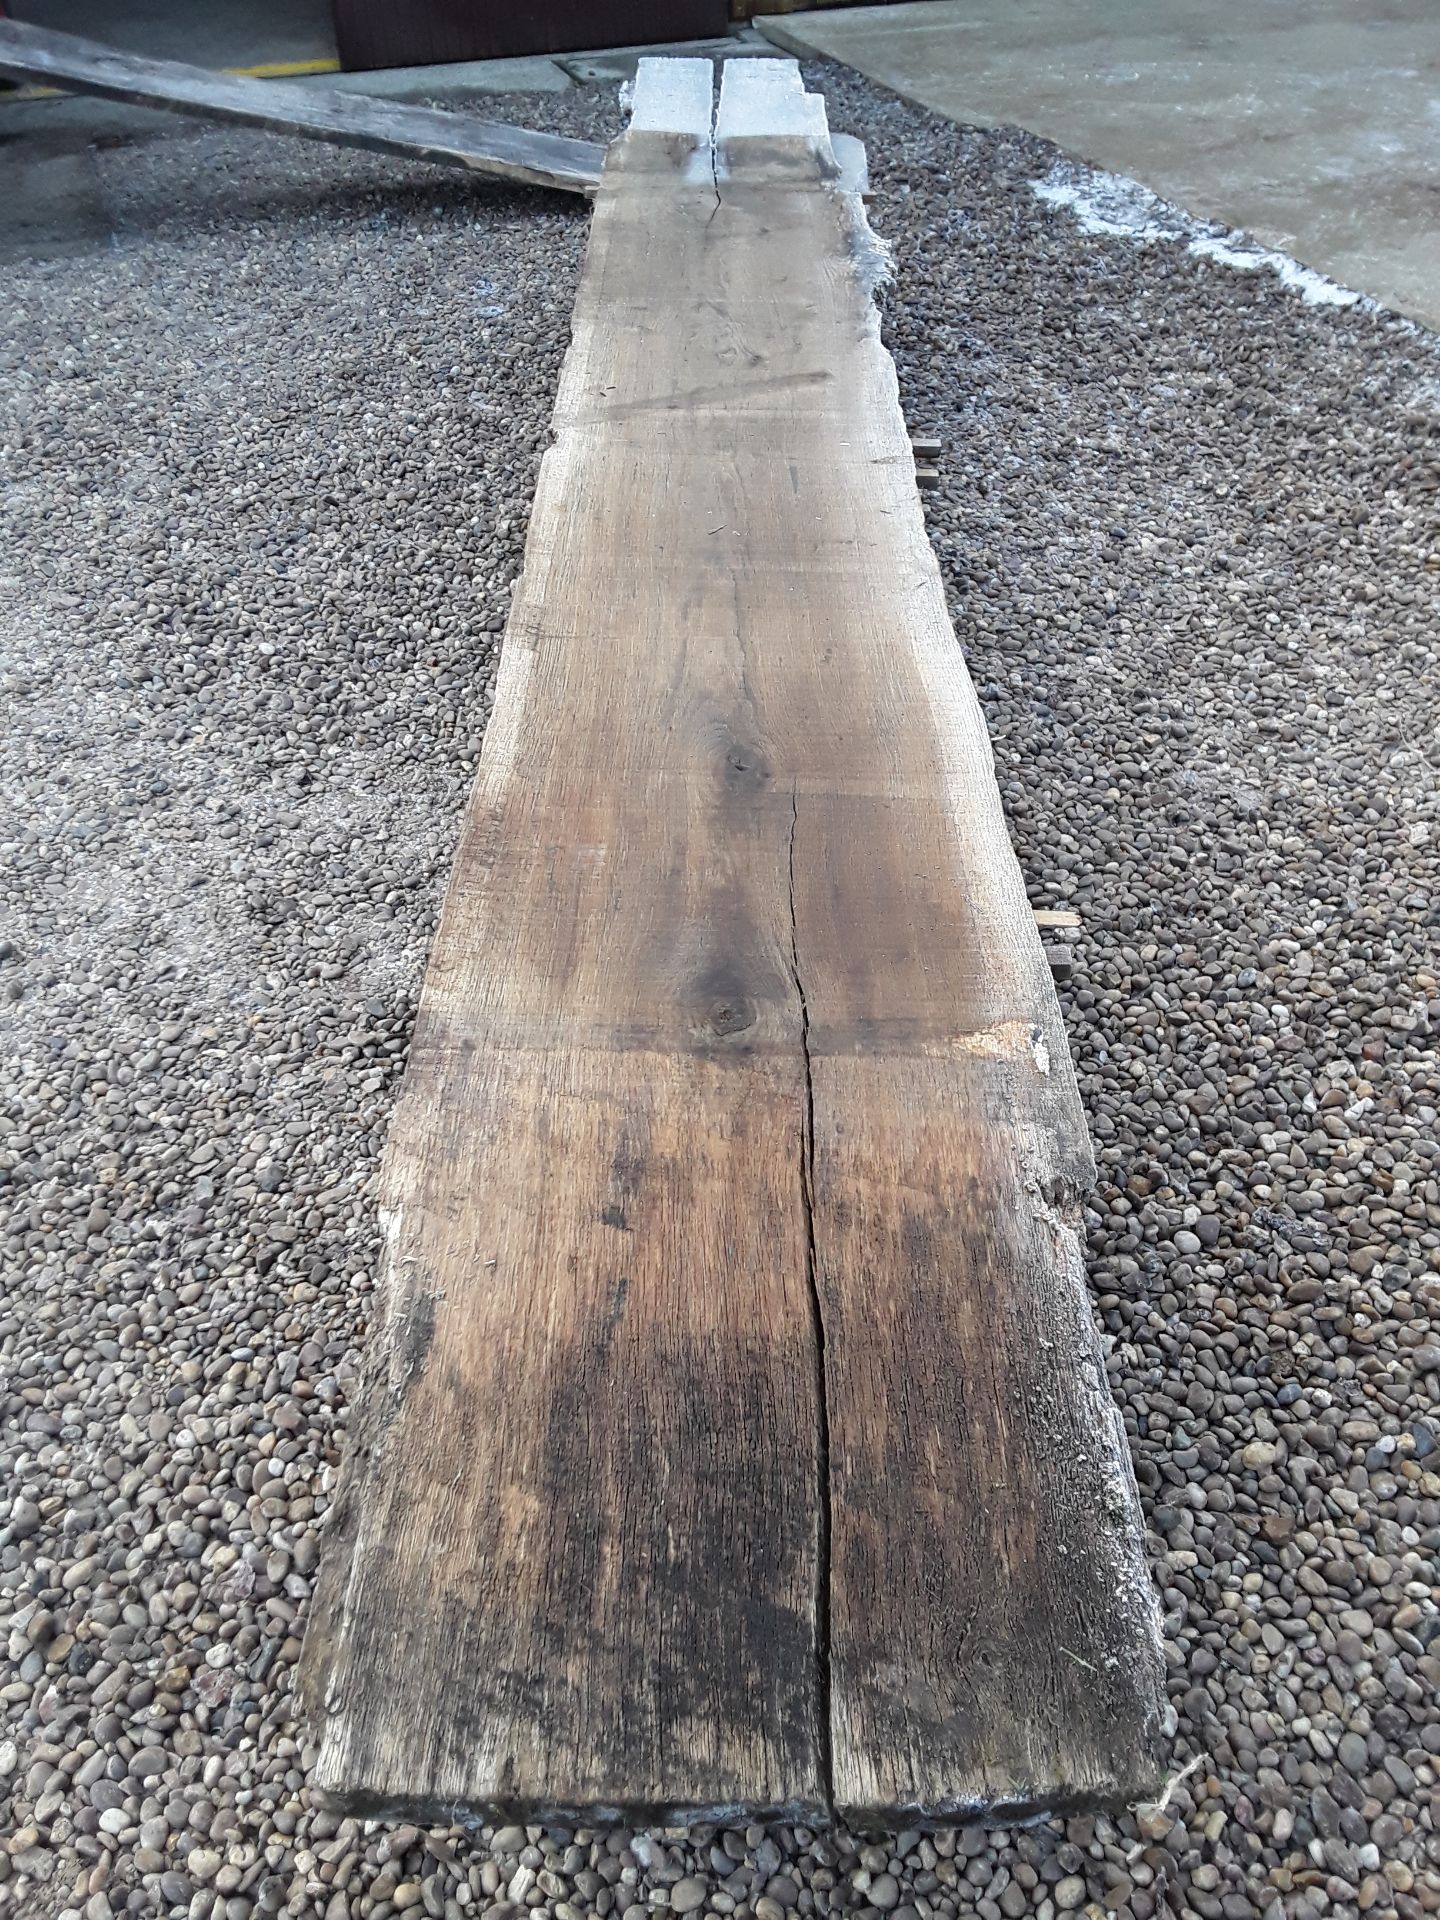 10 x Hardwood Timber Sawn Seasoned English Oak Waney Edge / Live Edge Boards/ Planks - Image 13 of 15